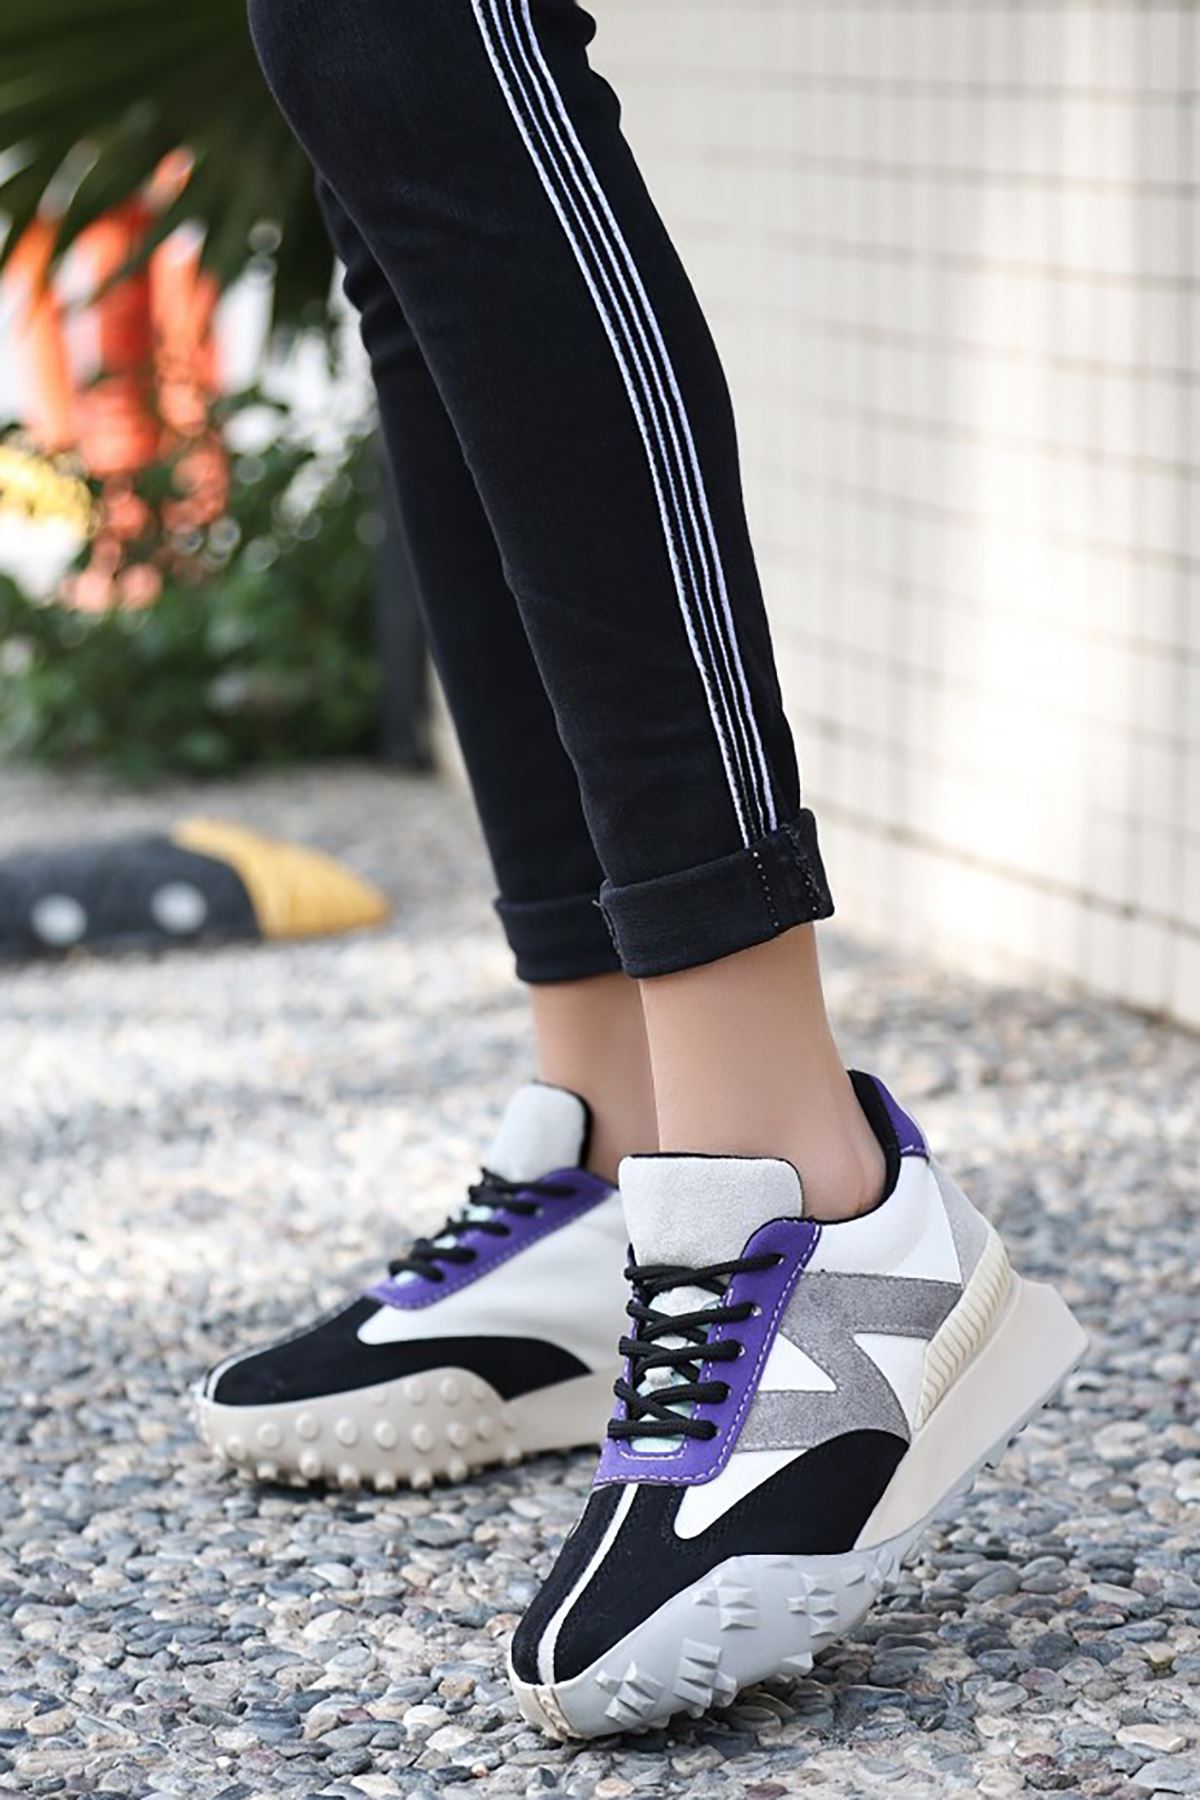 Mida Shoes ERSali Siyah Morl Süet Bağıcıklı Kadın Spor Ayakkabı